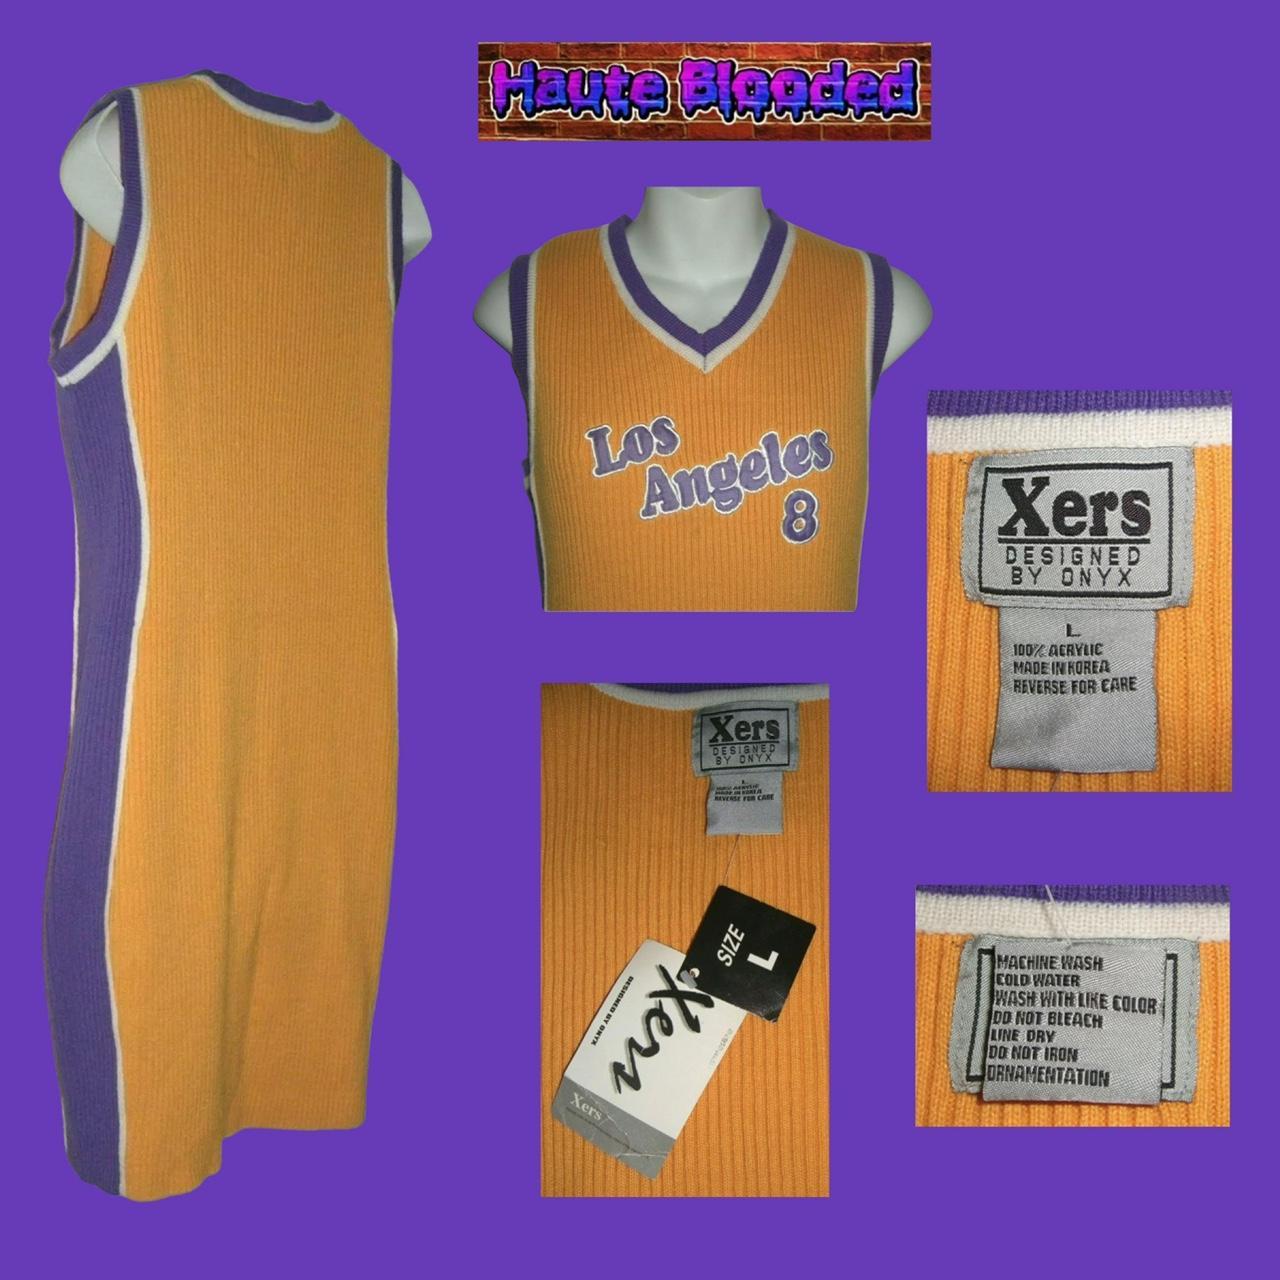 Purple Lakers jersey dress #jerseydress - Depop